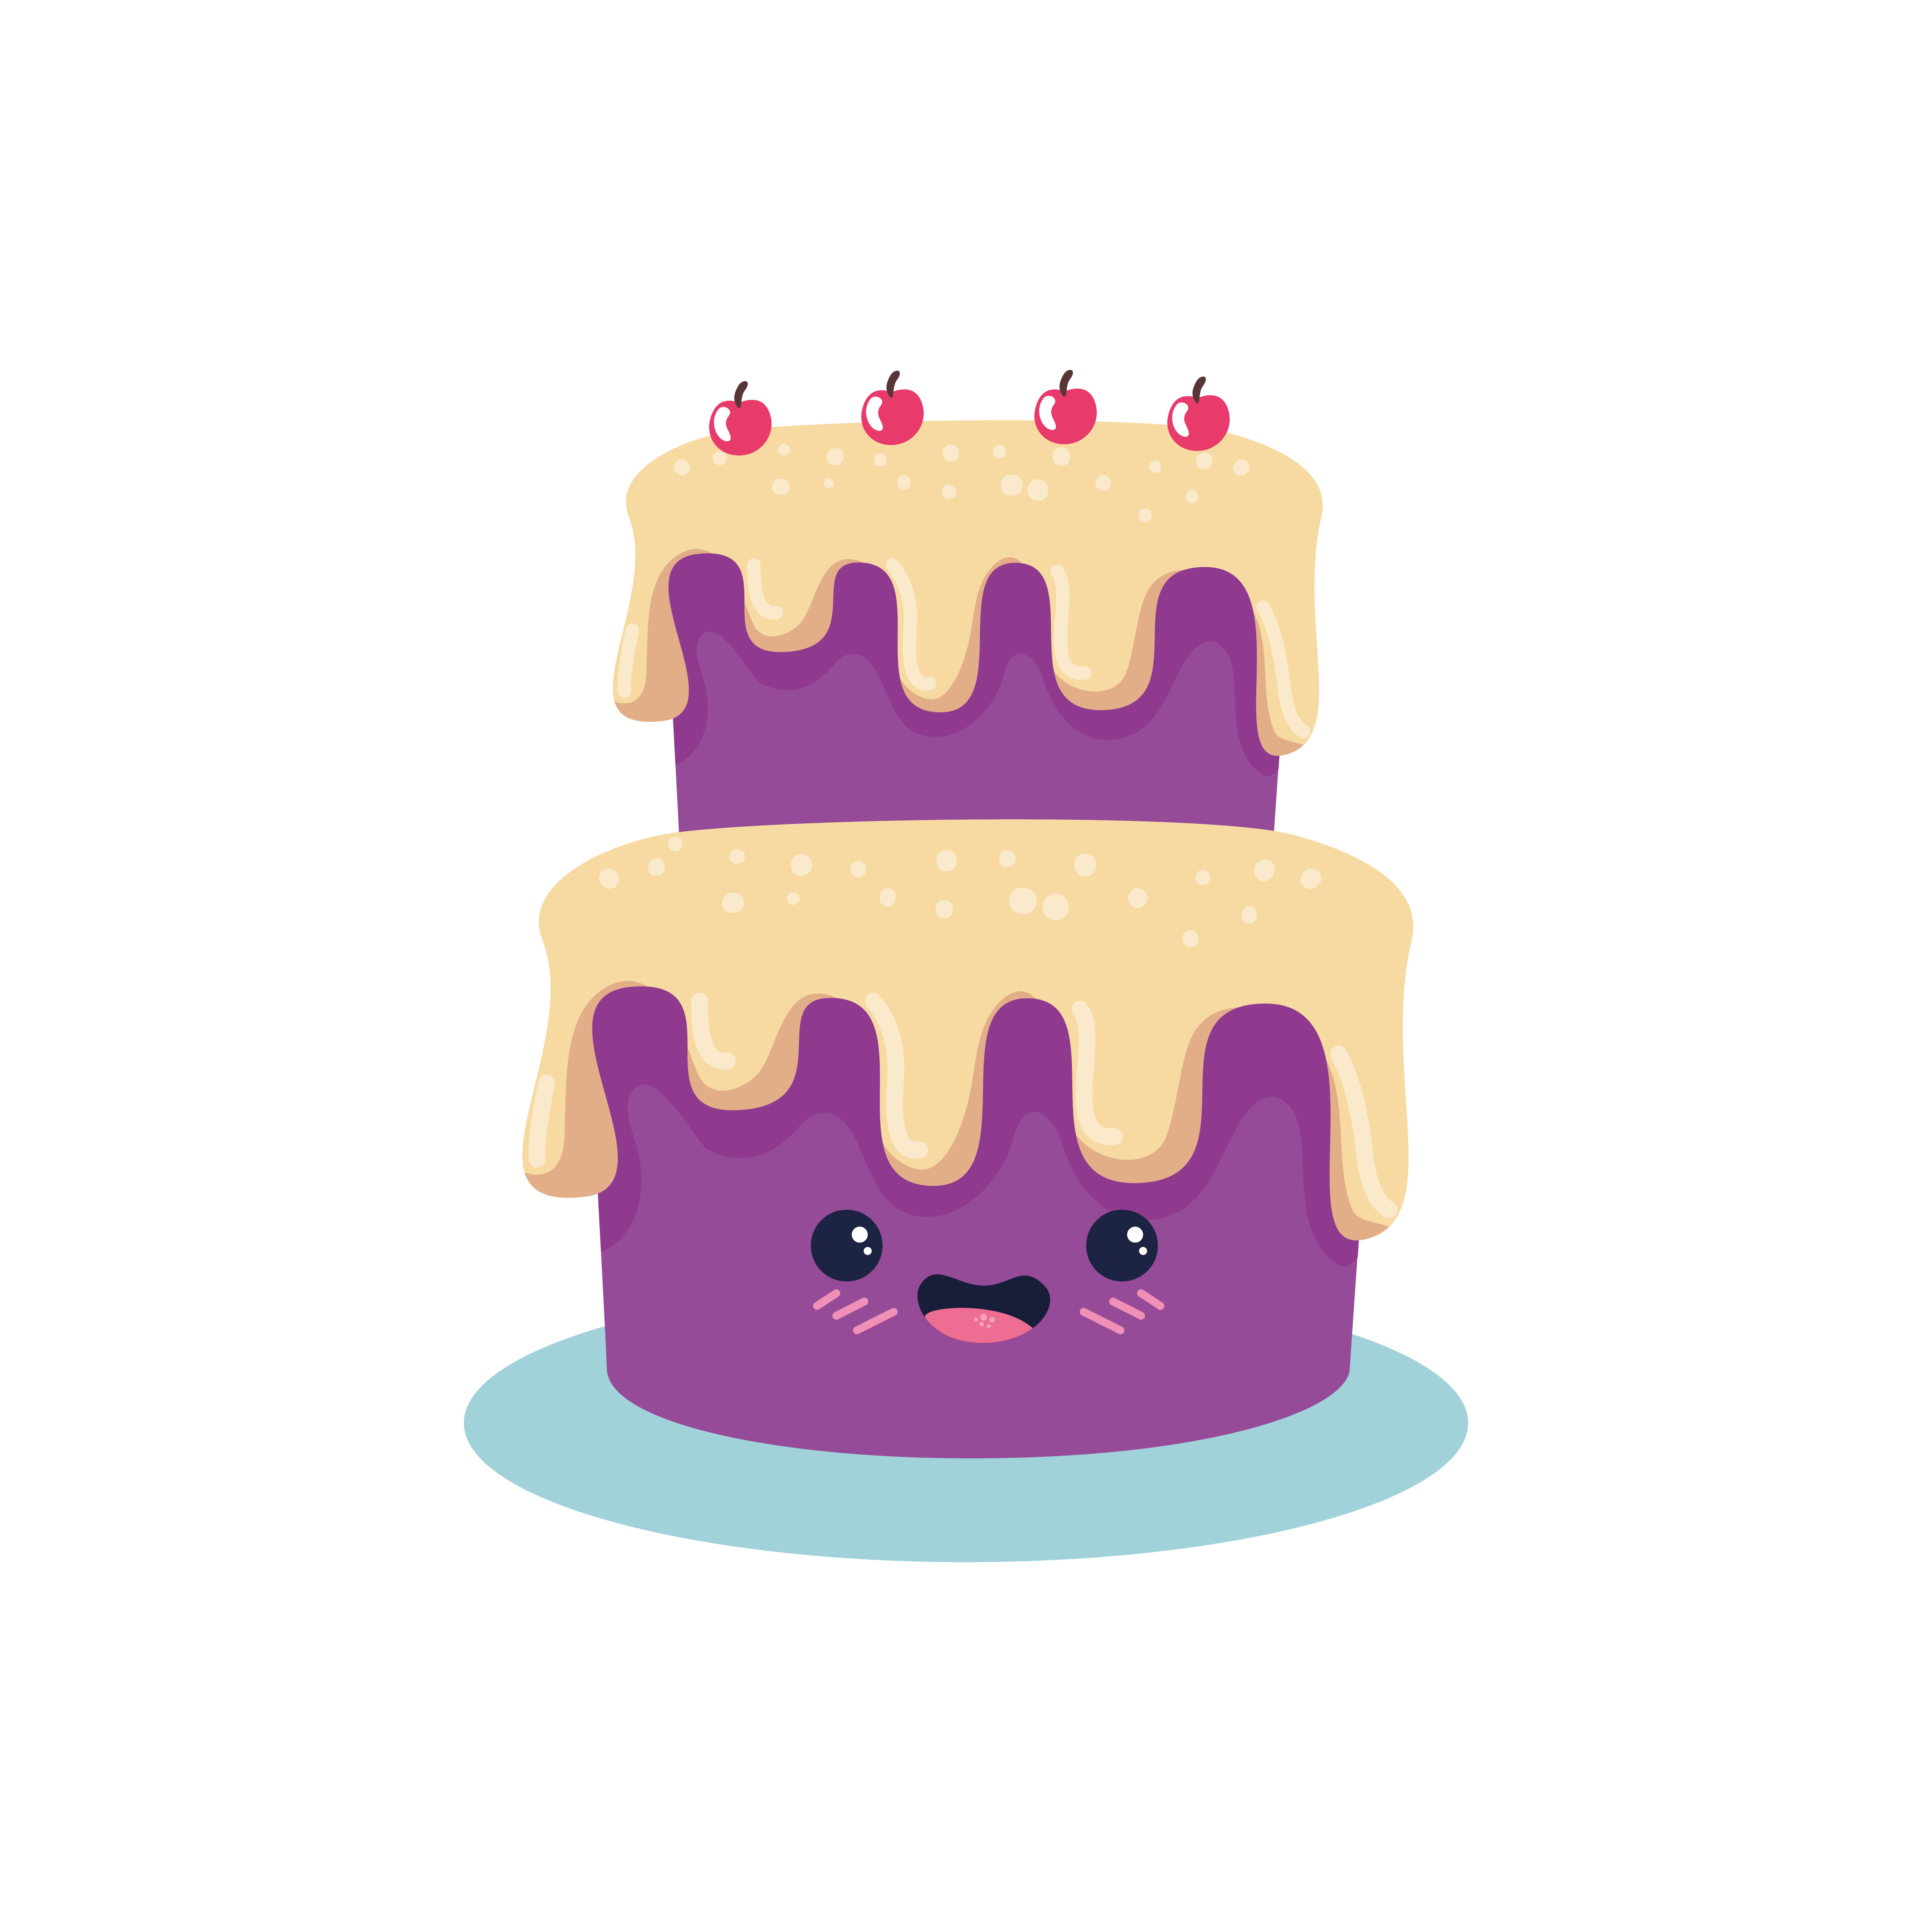 Happy birthday cake cartoon vector design 3179625 Vector Art at Vecteezy